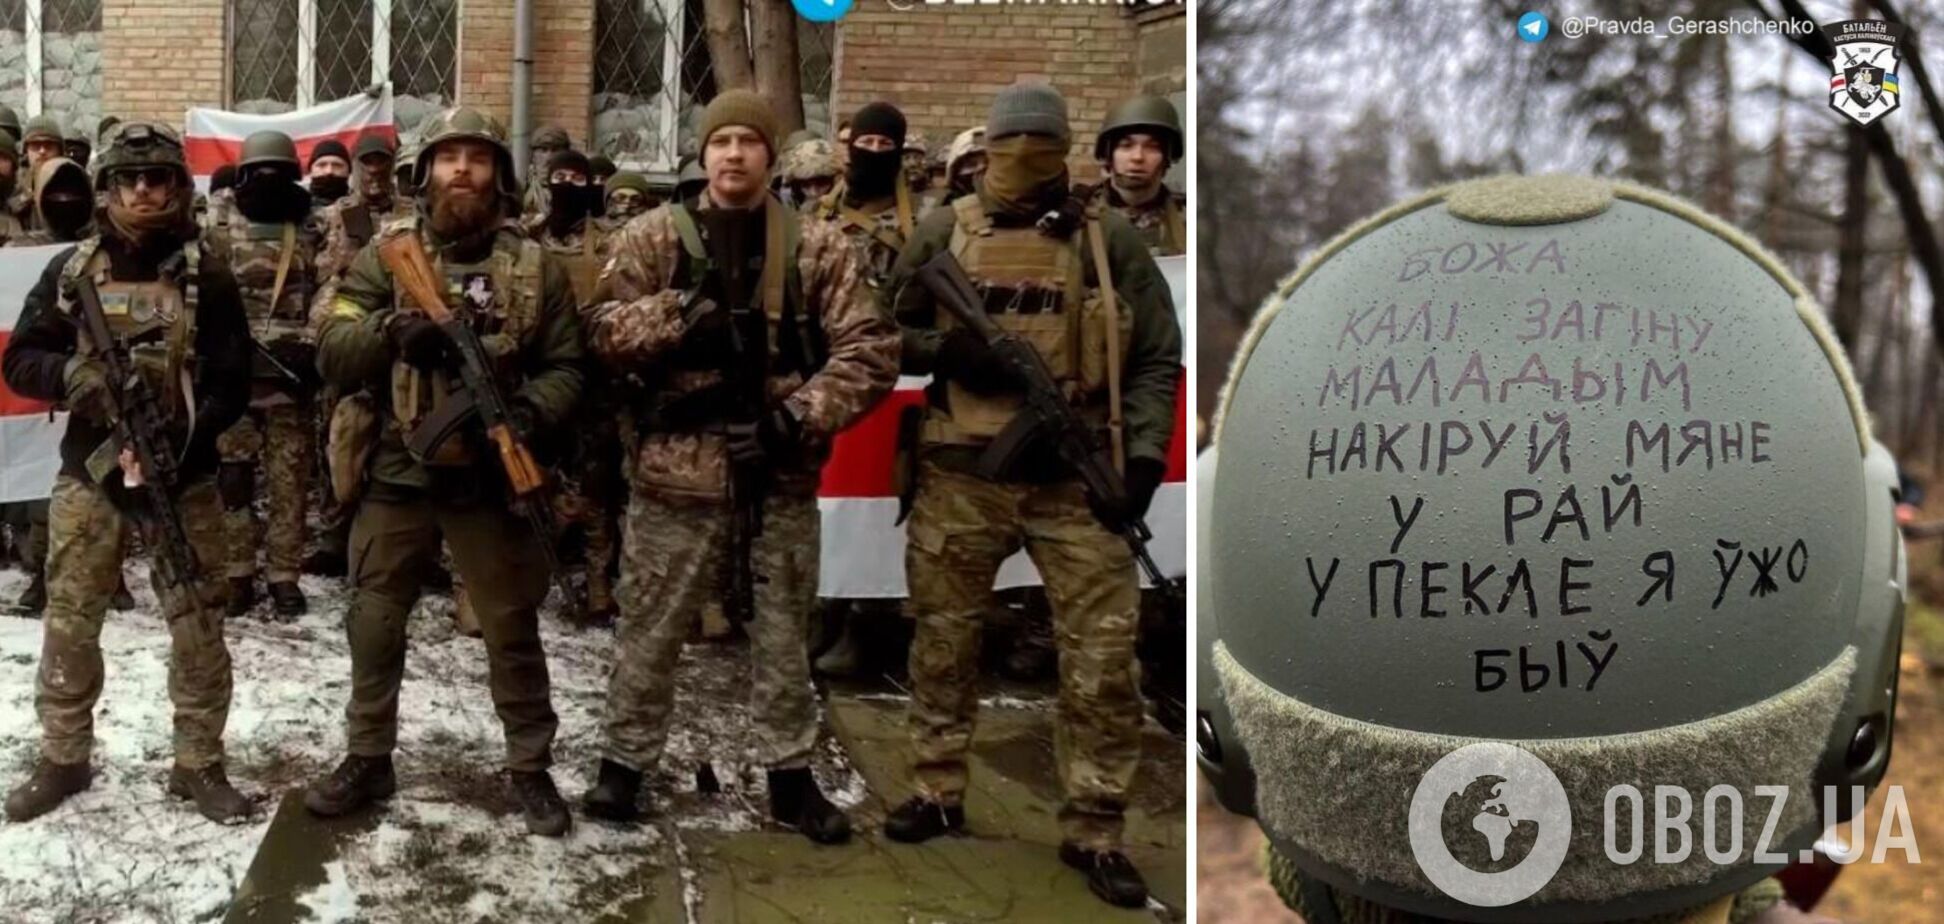 'Боже, если я погибну, отправь меня в рай, в аду я уже был': в сети показали надпись на шлеме добровольца, который воюет за Украину. Фото